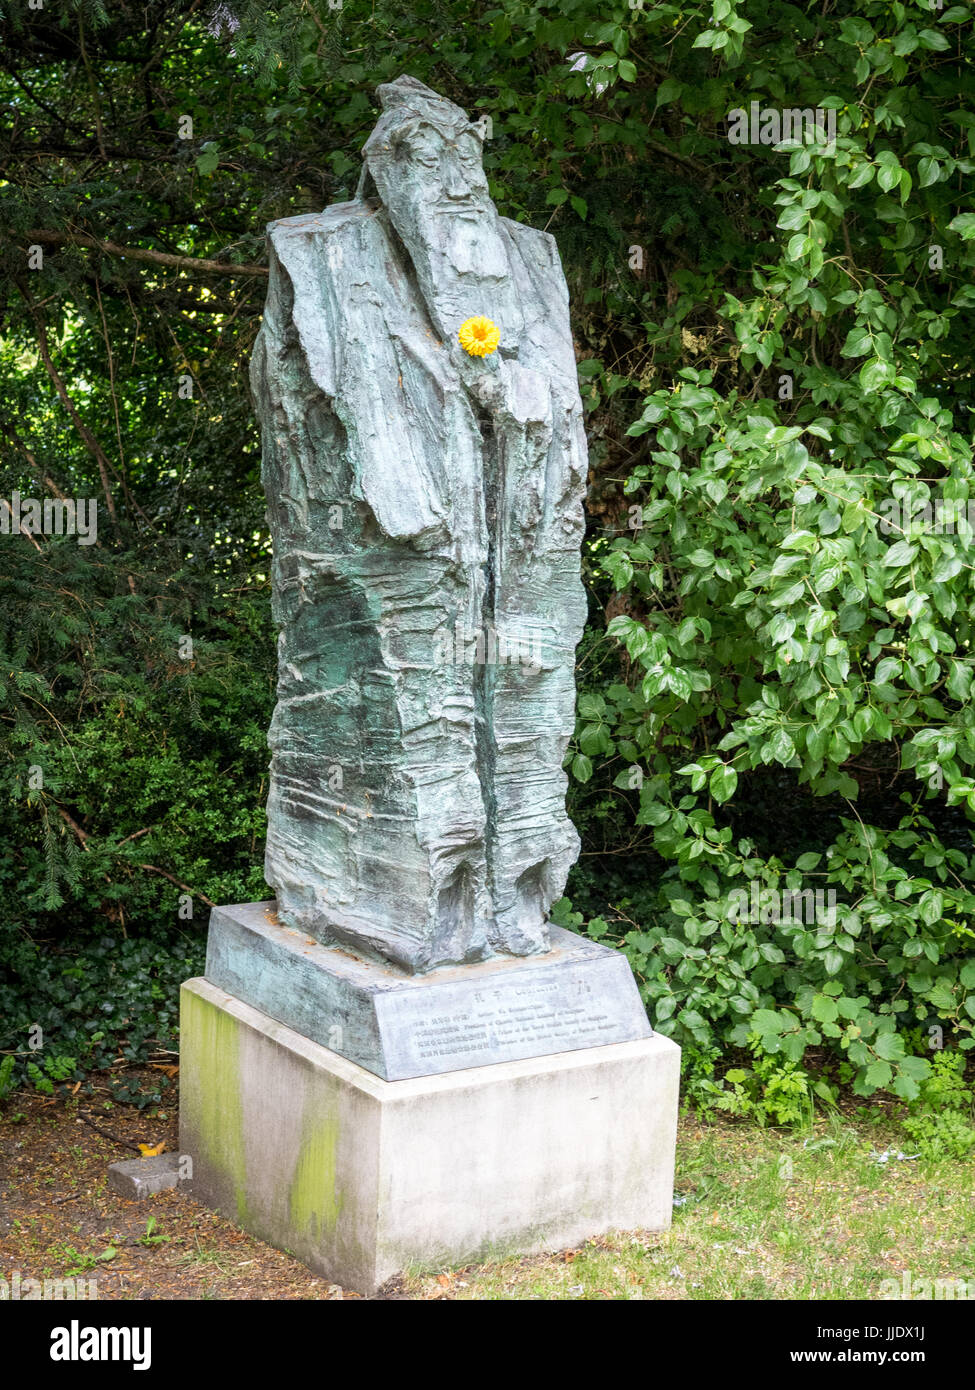 Statue de Confucius - artiste Wu Weishan - dans le parc de Clare College, qui fait partie de l'Université de Cambridge, Royaume-Uni Banque D'Images